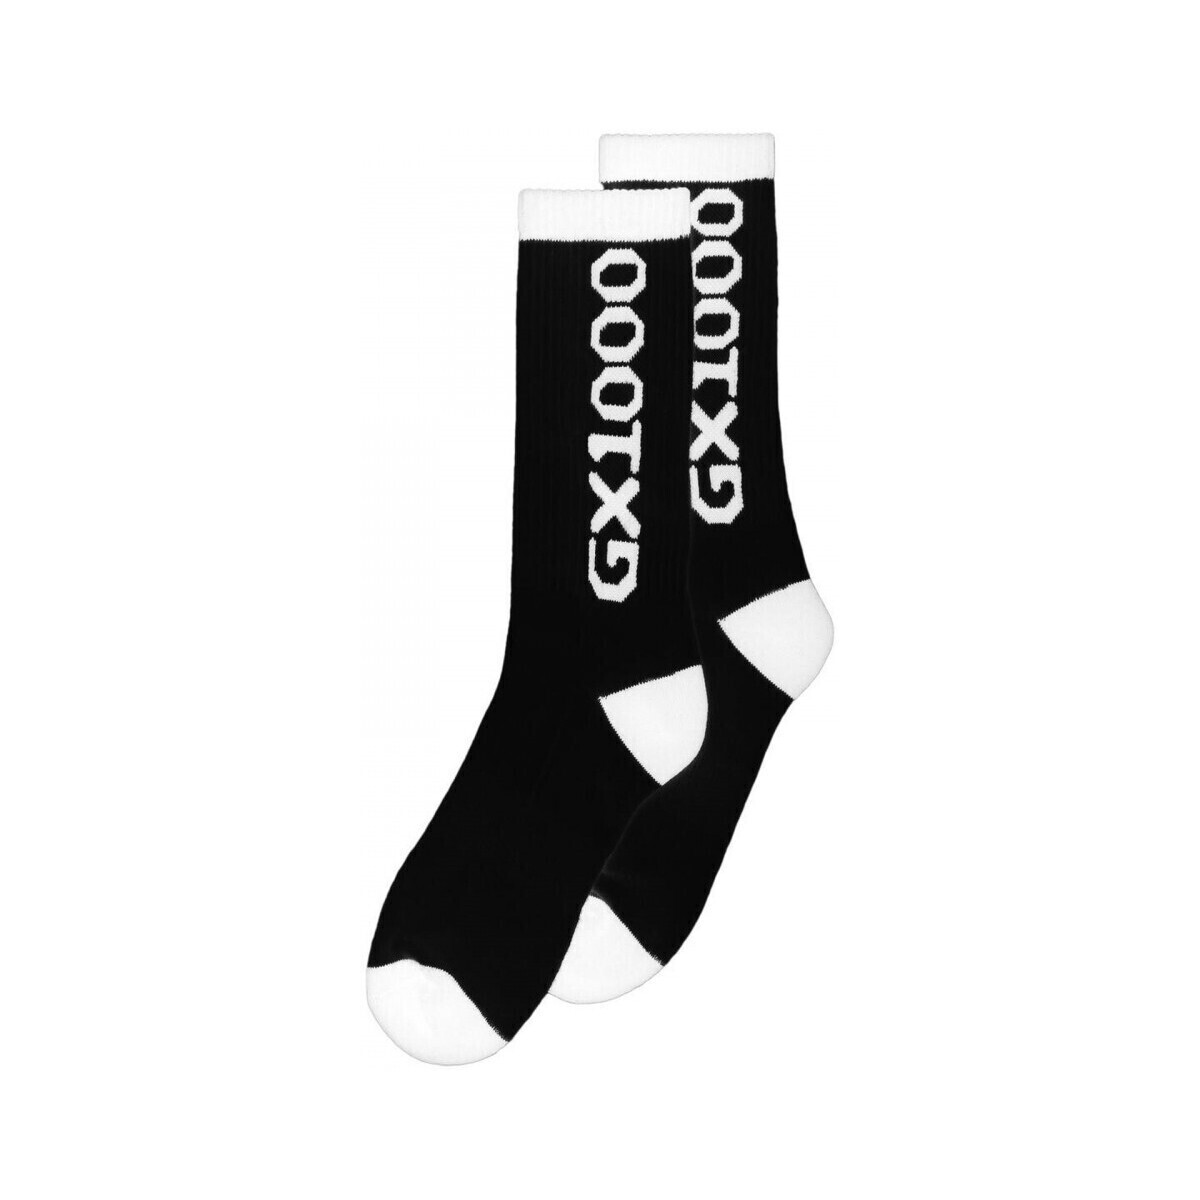 Gx1000  Socks og logo  Černá